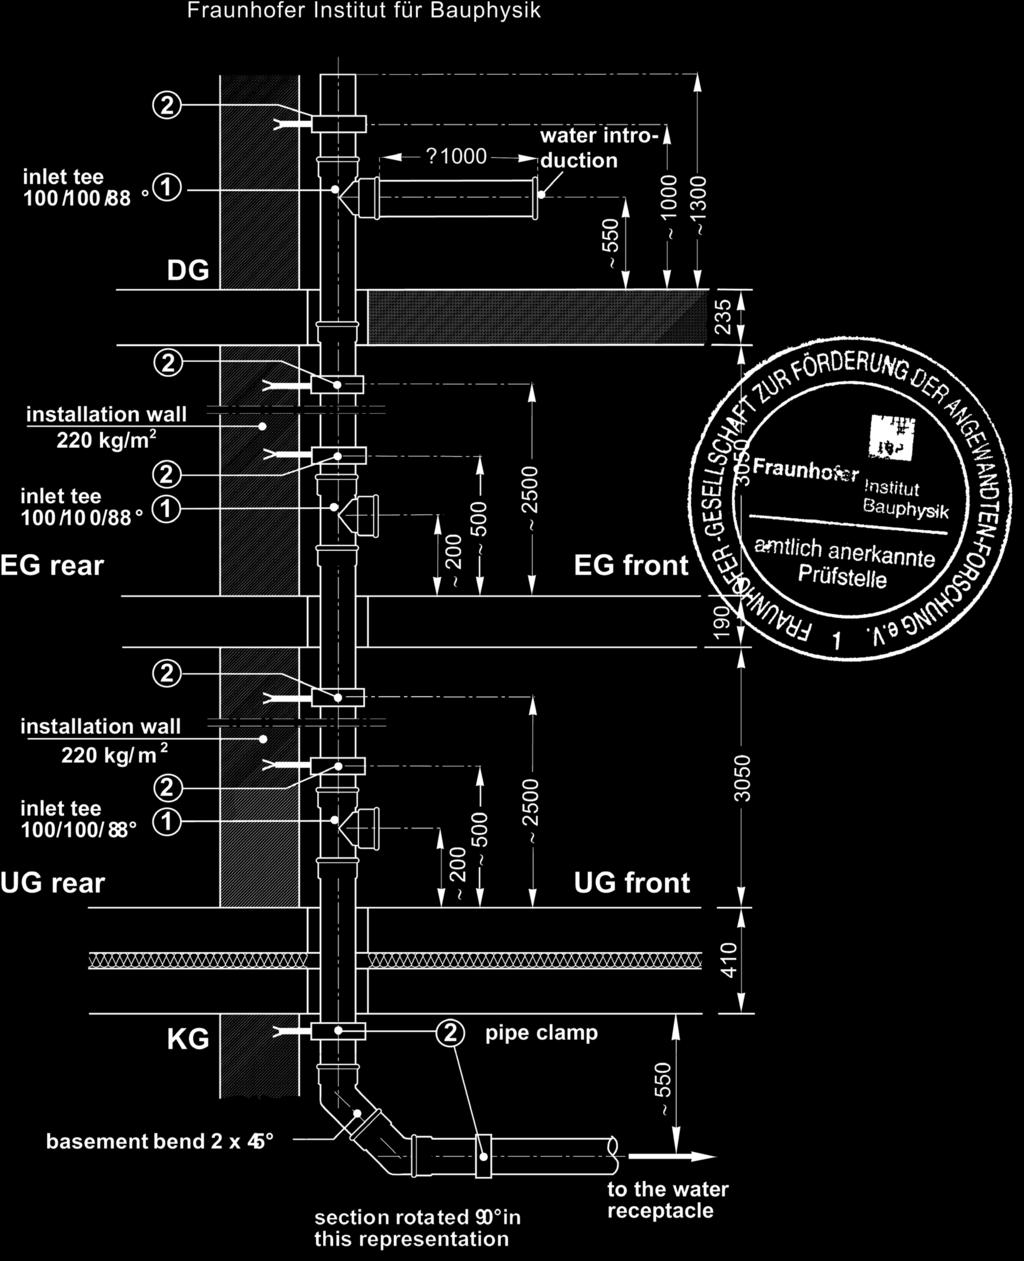 MASTER 3 Měření zvukové hladiny Analýza zvukových hladin byla provedena institutem stavební fyziky Fraunhofer Institut ve Stuttgartu v souladu s EN 14366 - viz zkušební zpráva P-BA 53/2007.